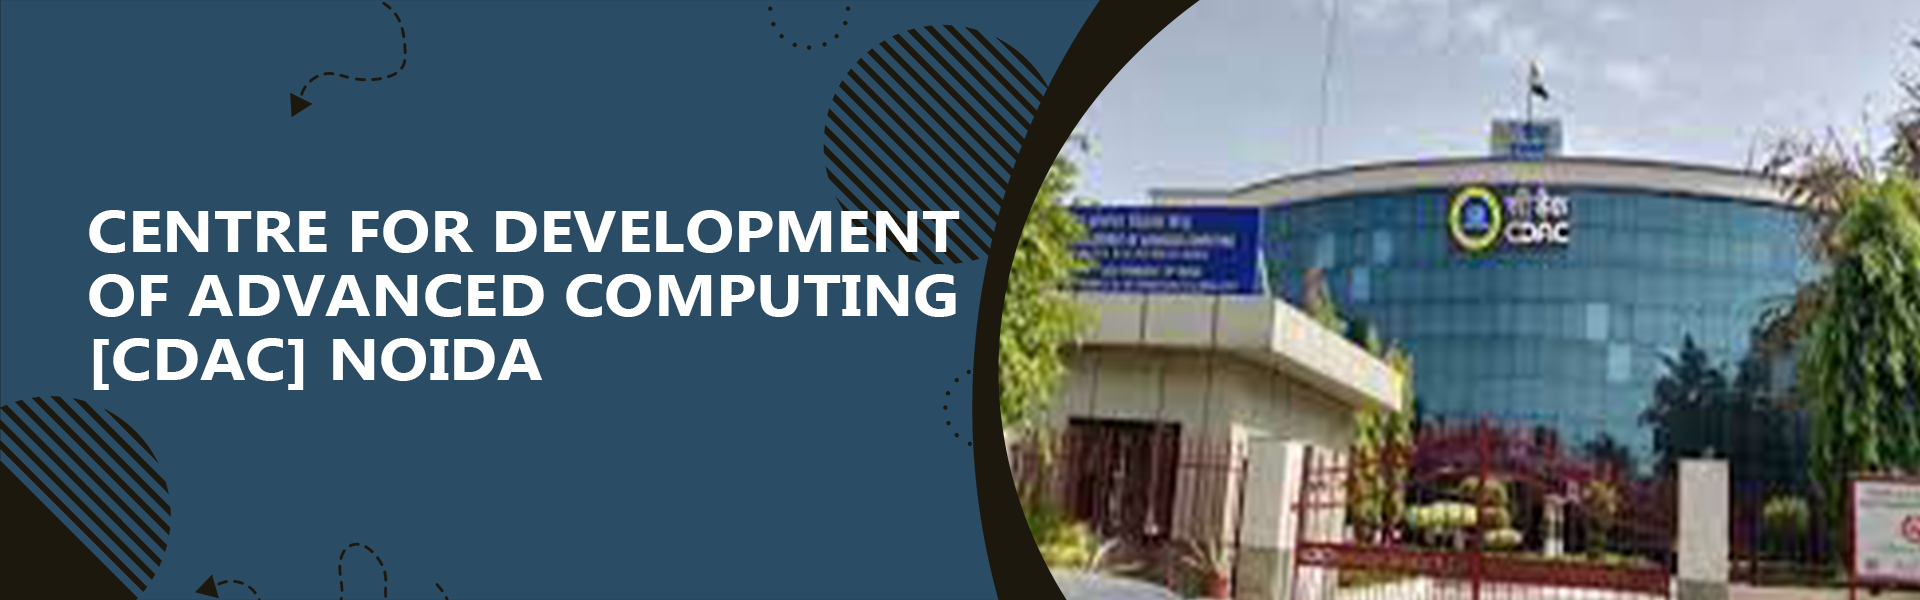 Centre For Development Of Advanced Computing - [CDAC], Noida